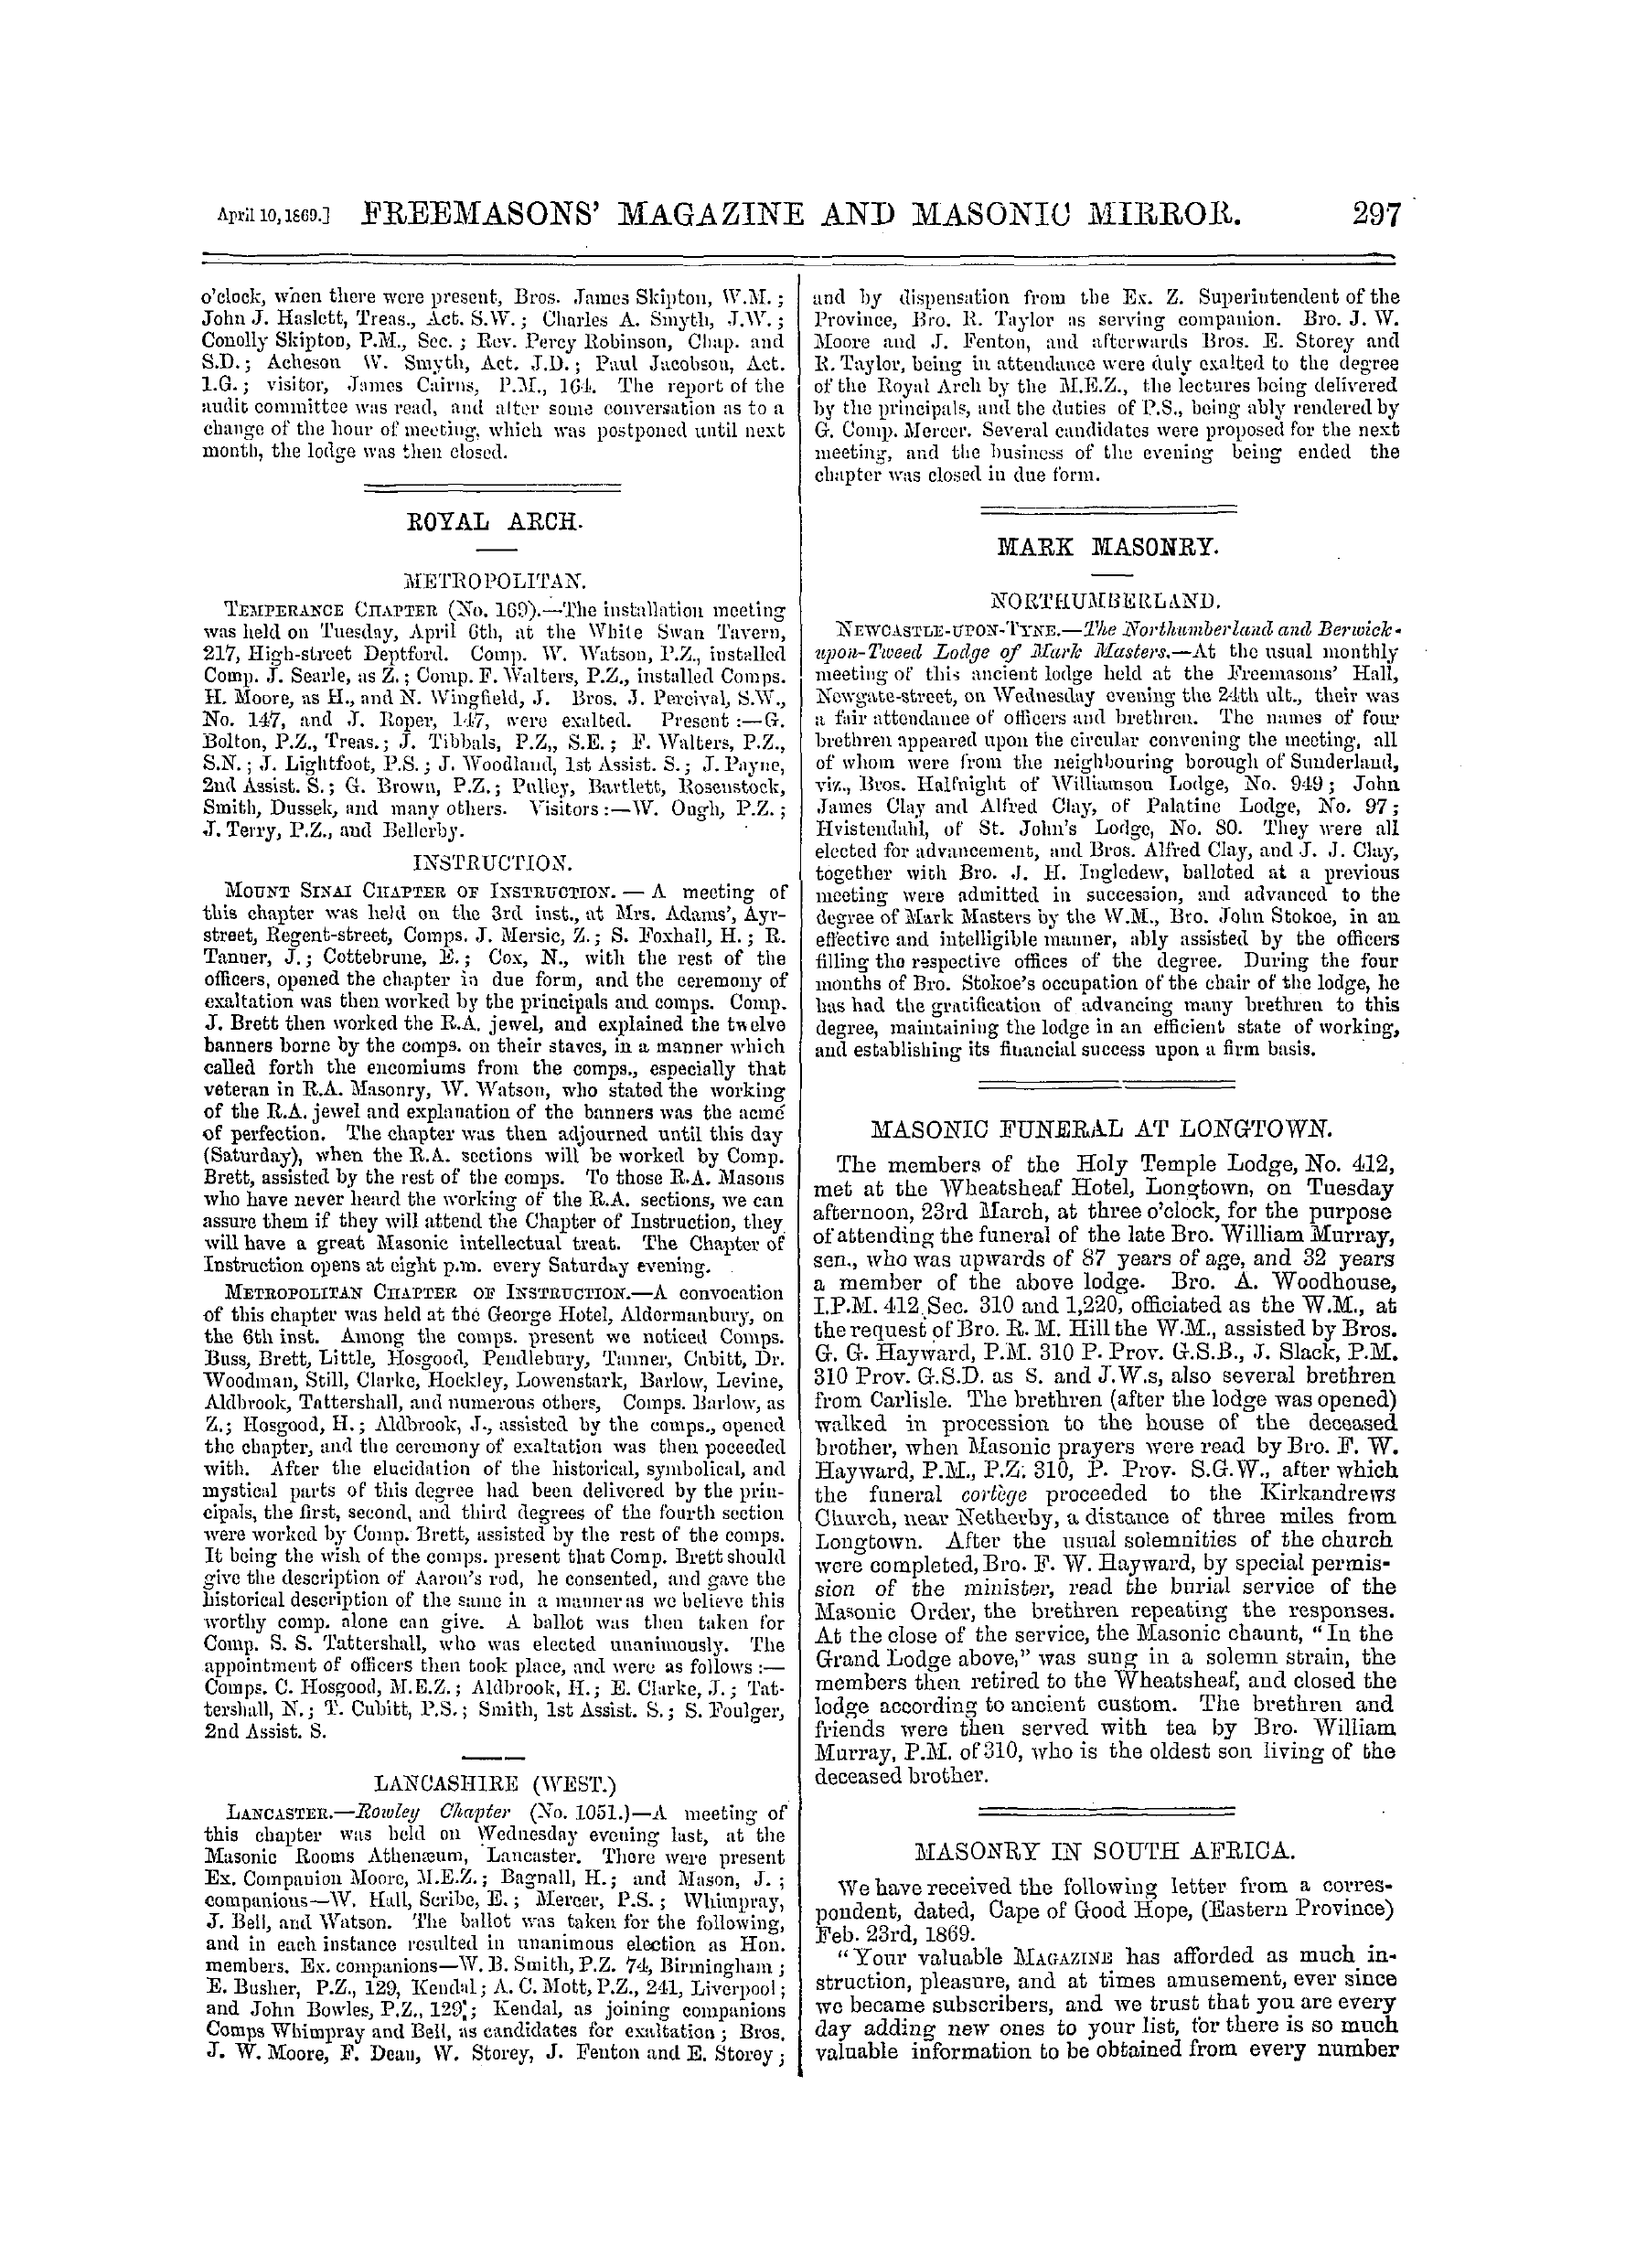 The Freemasons' Monthly Magazine: 1869-04-10 - Ireland.